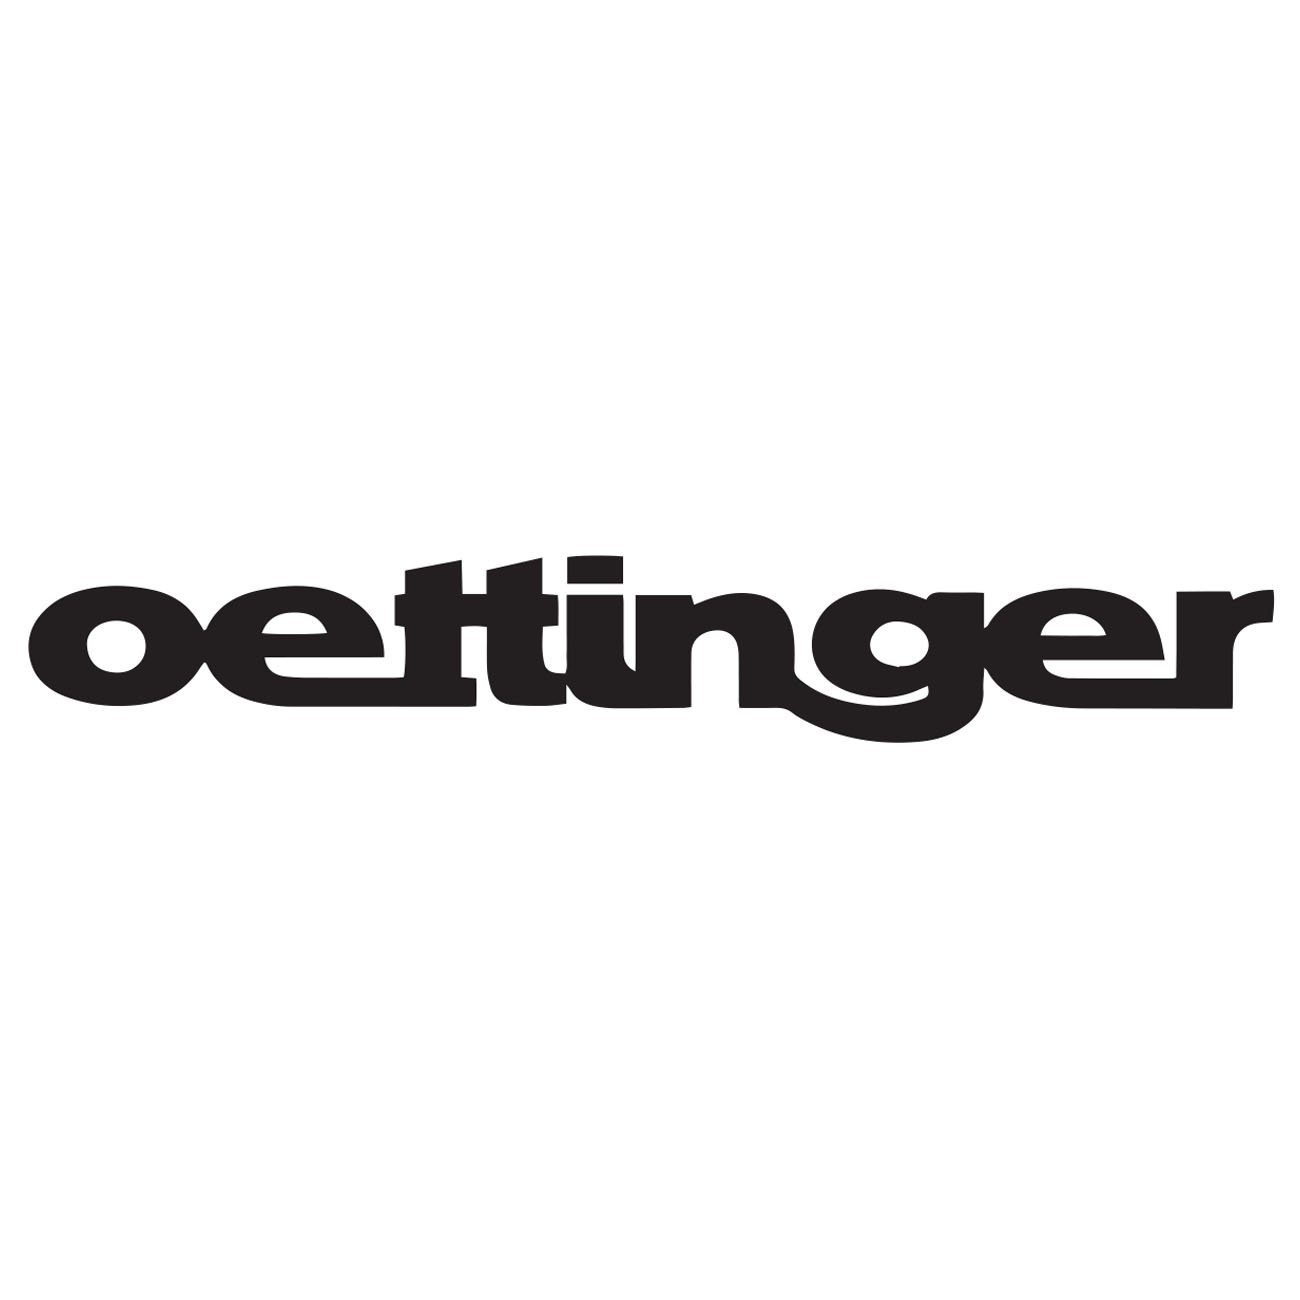 Oettinger logo